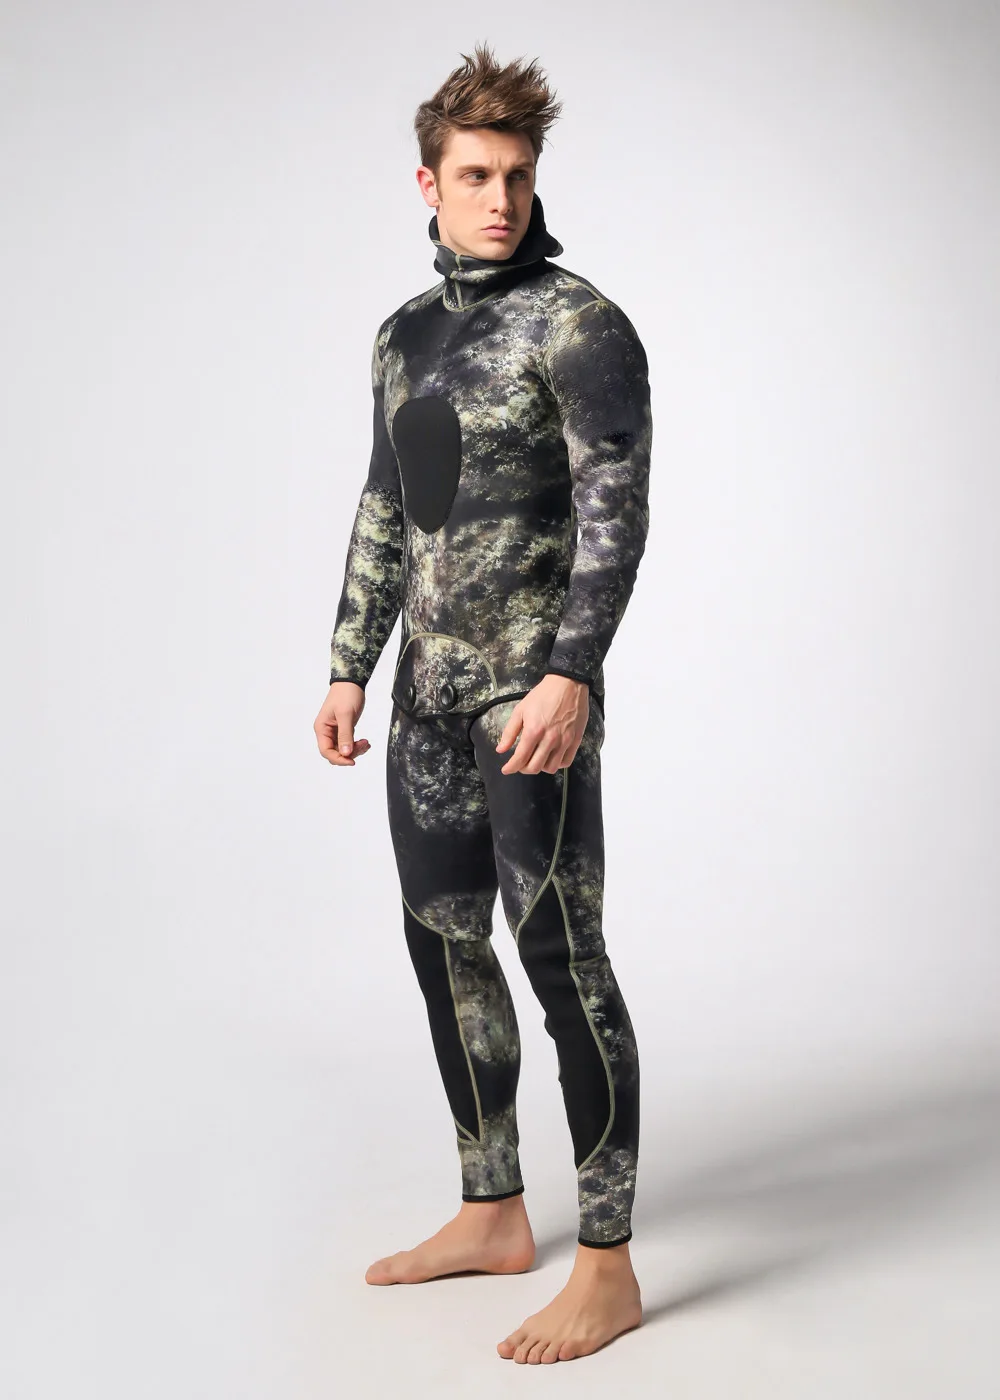 3 мм водолазный костюм с длинным рукавом Mergulho полное тепло тела солнцезащитный гидрокостюм для серфинга с головным убором Мужская спортивная одежда